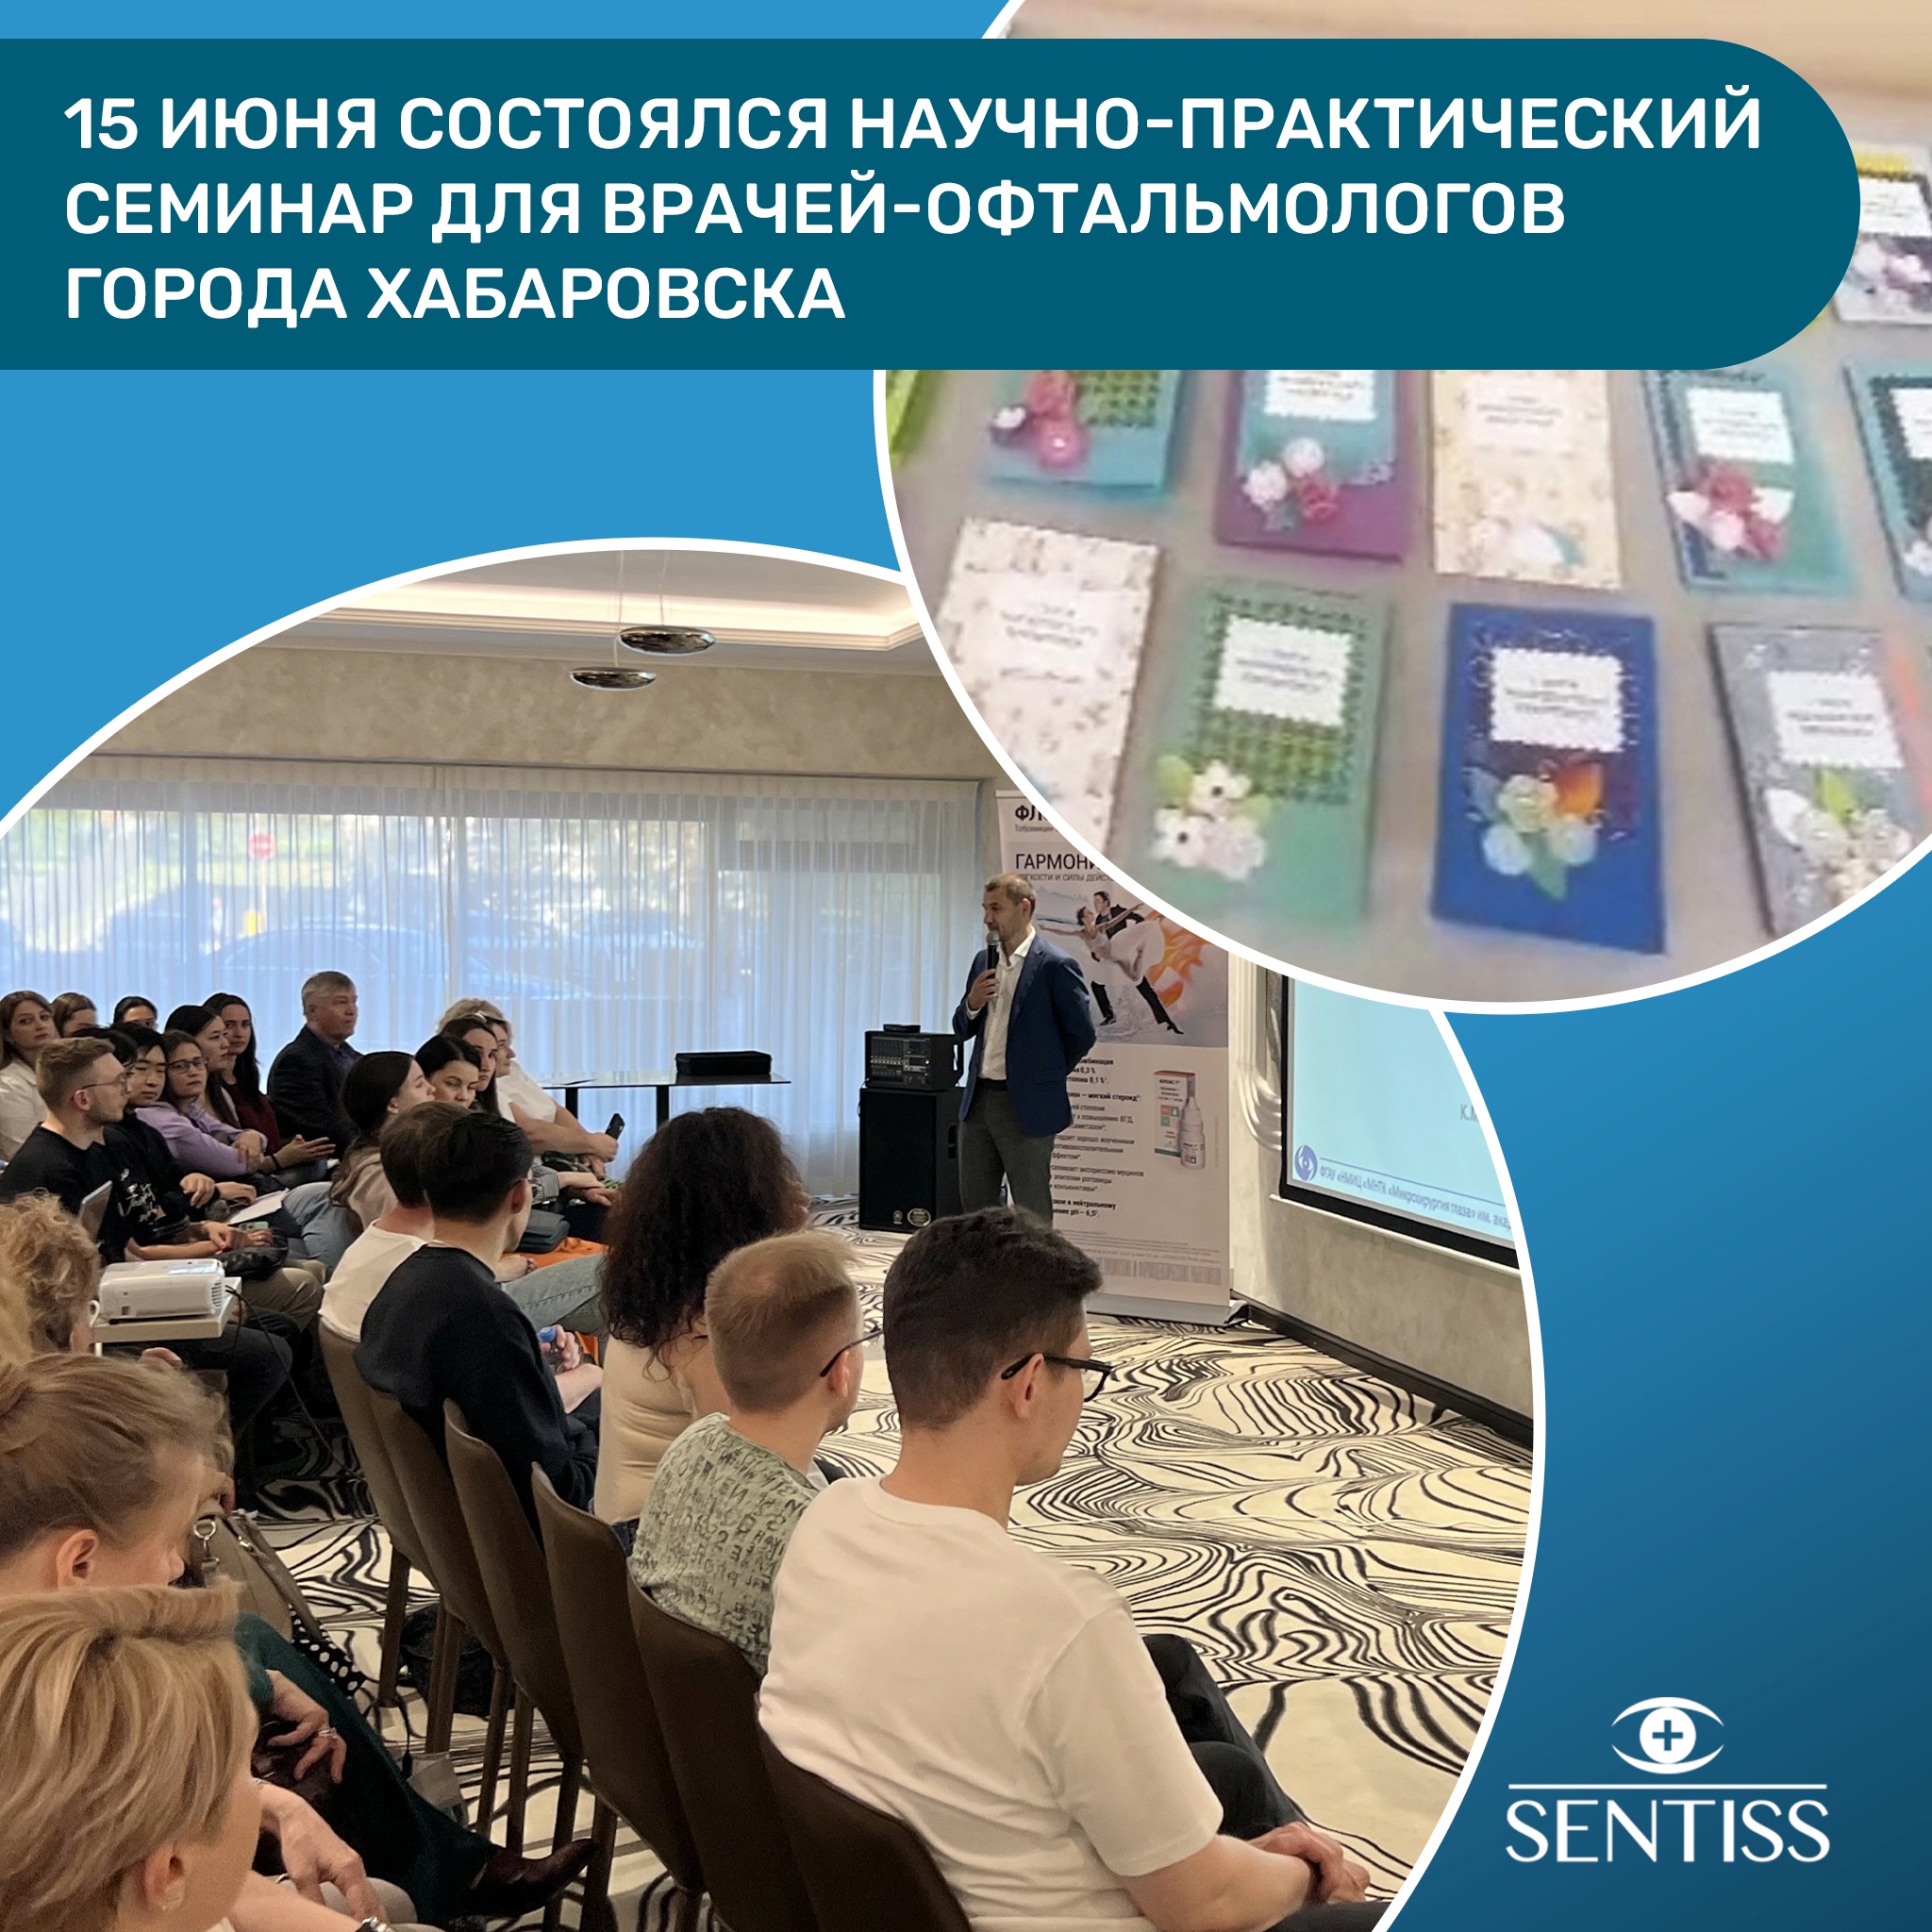 Научно-практический семинар для врачей-офтальмологов г. Хабаровска